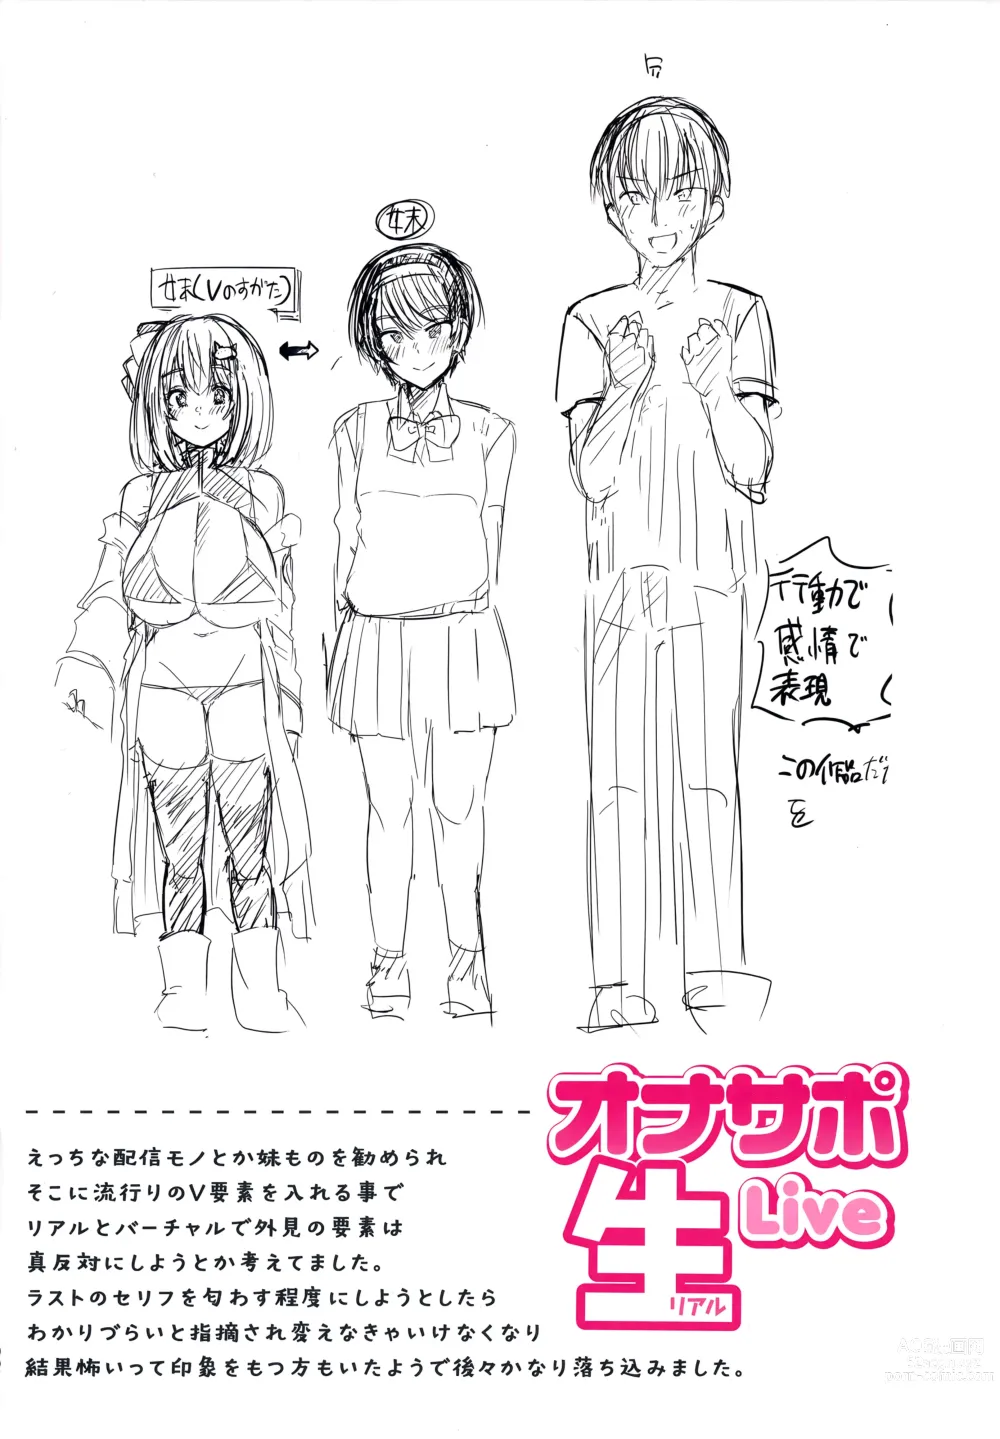 Page 168 of manga Nukunuku Seikatsu - Life Full of Sex + Melonbooks Kounyu Tokuten + Toranoana Kounyu Tokuten